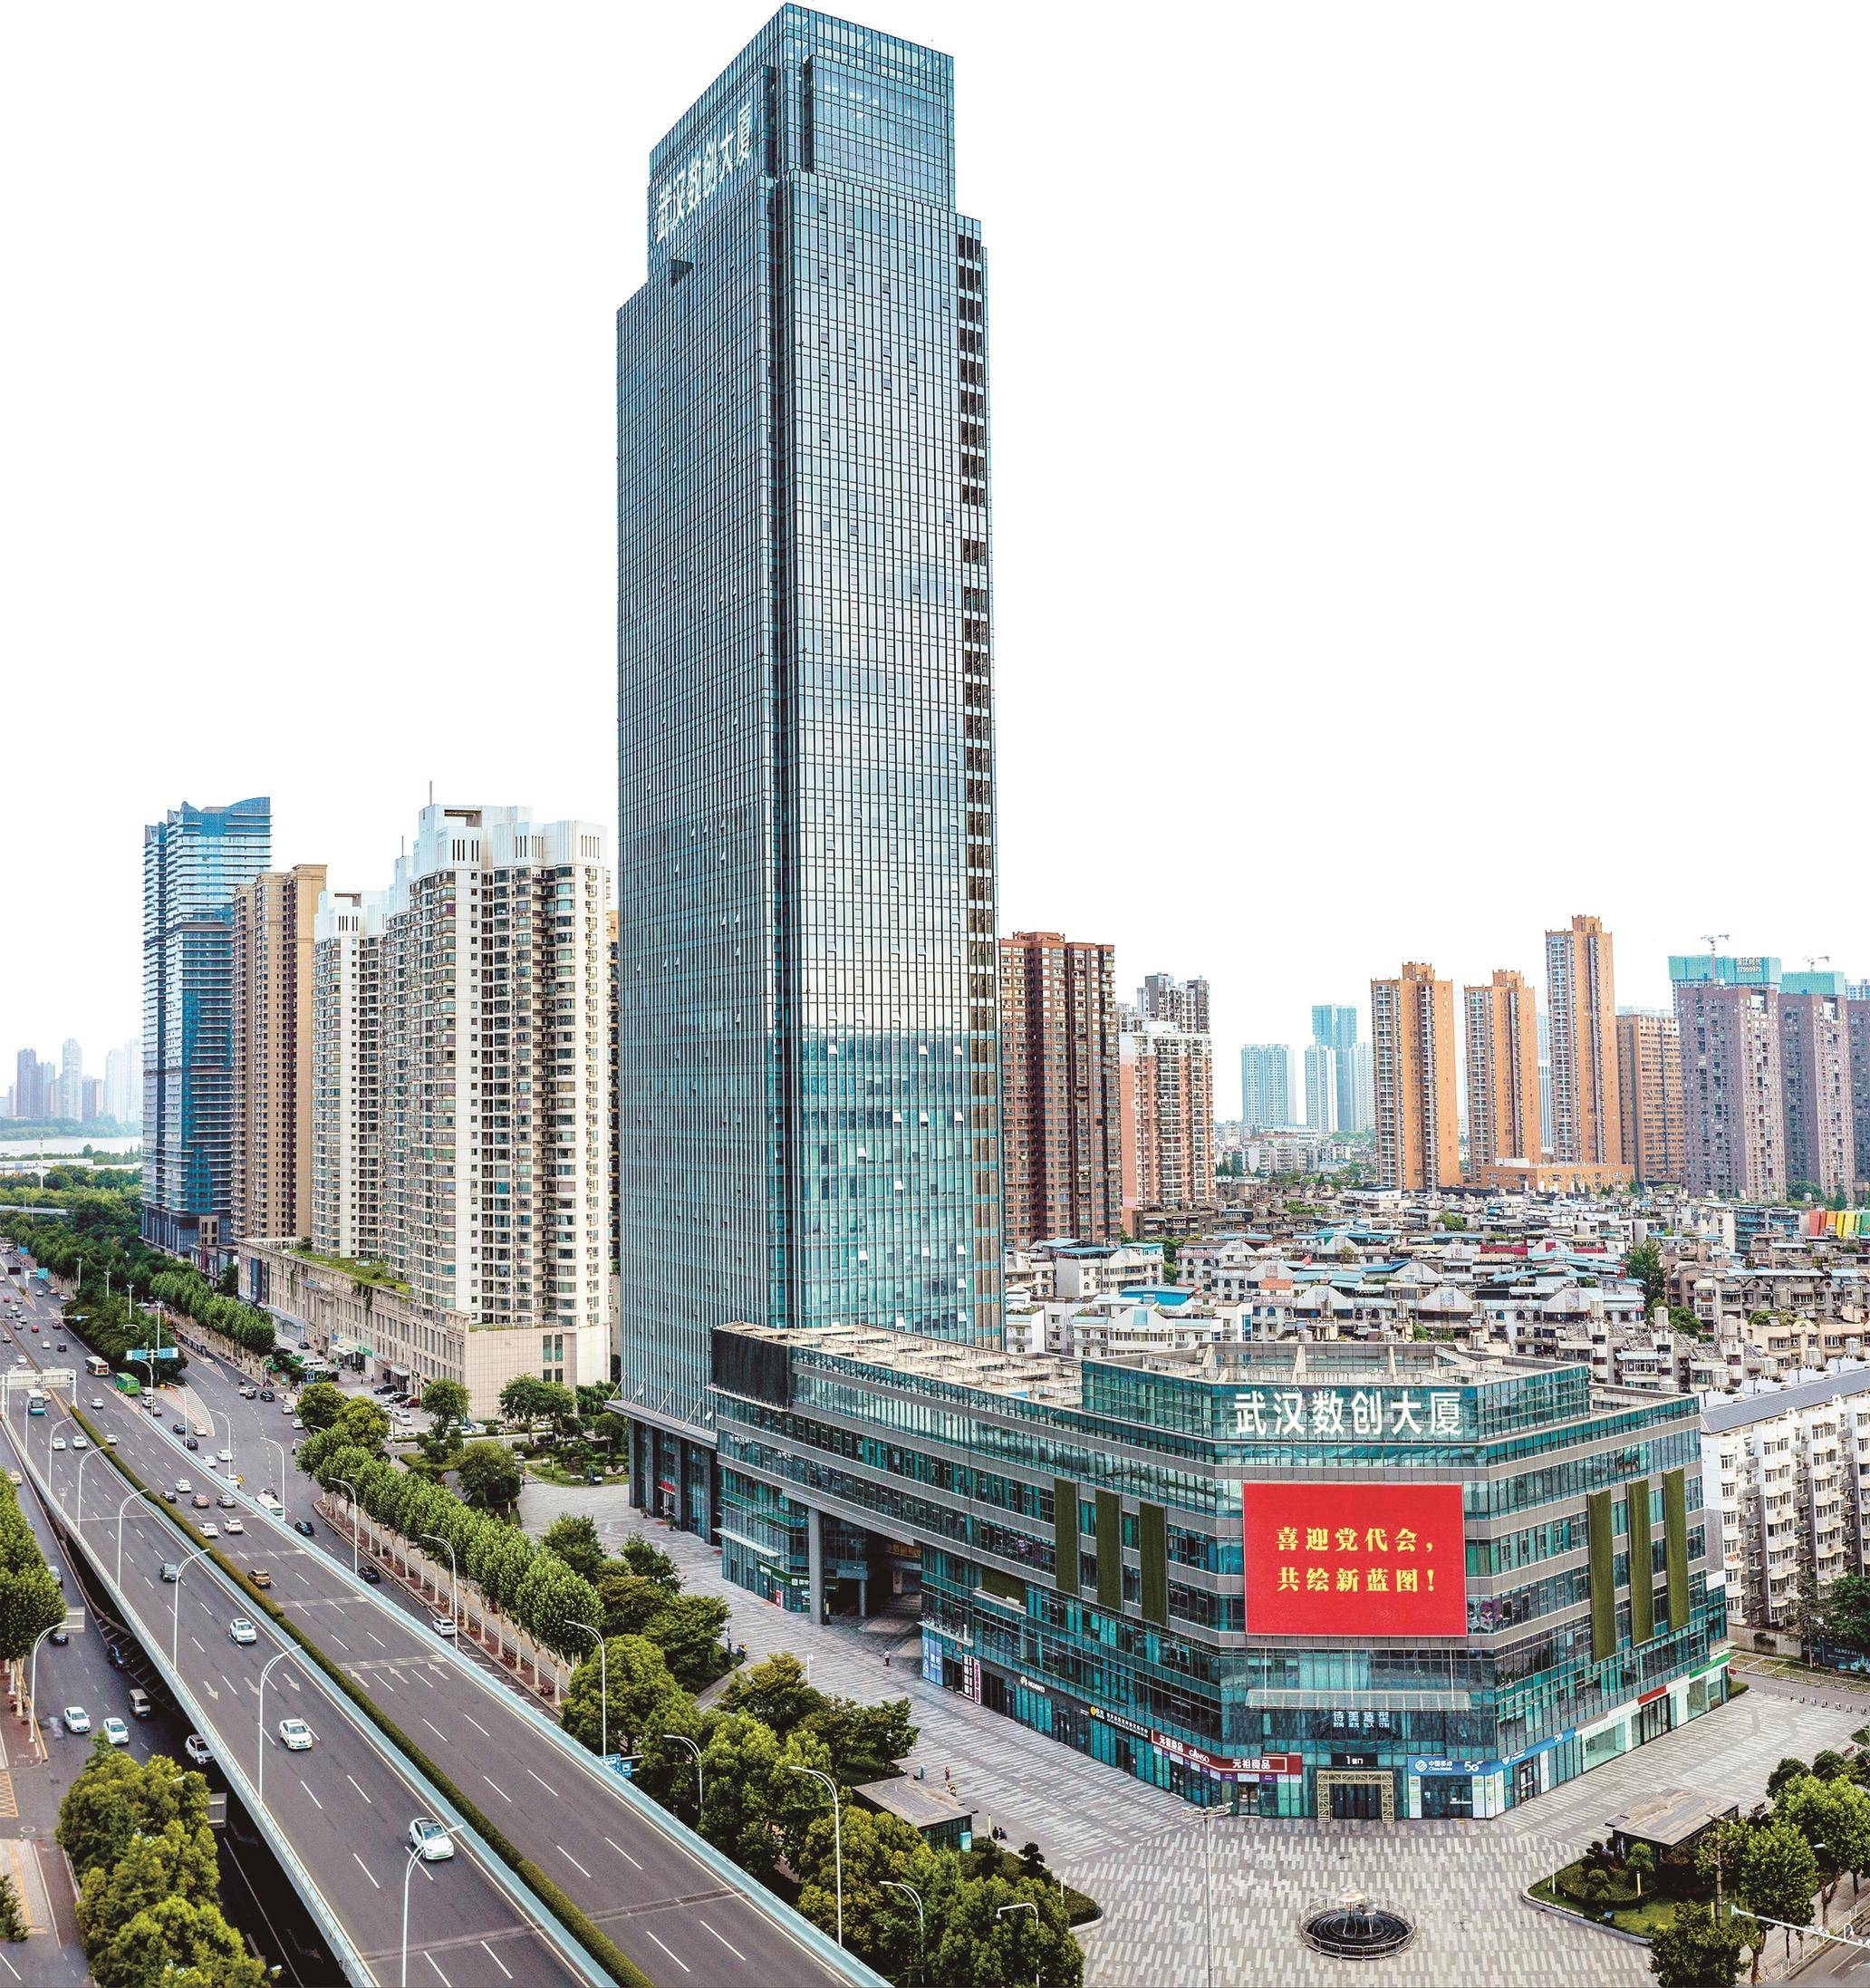 6月15日,武汉首义科技创新投资发展集团有限公司(以下简称首义科创